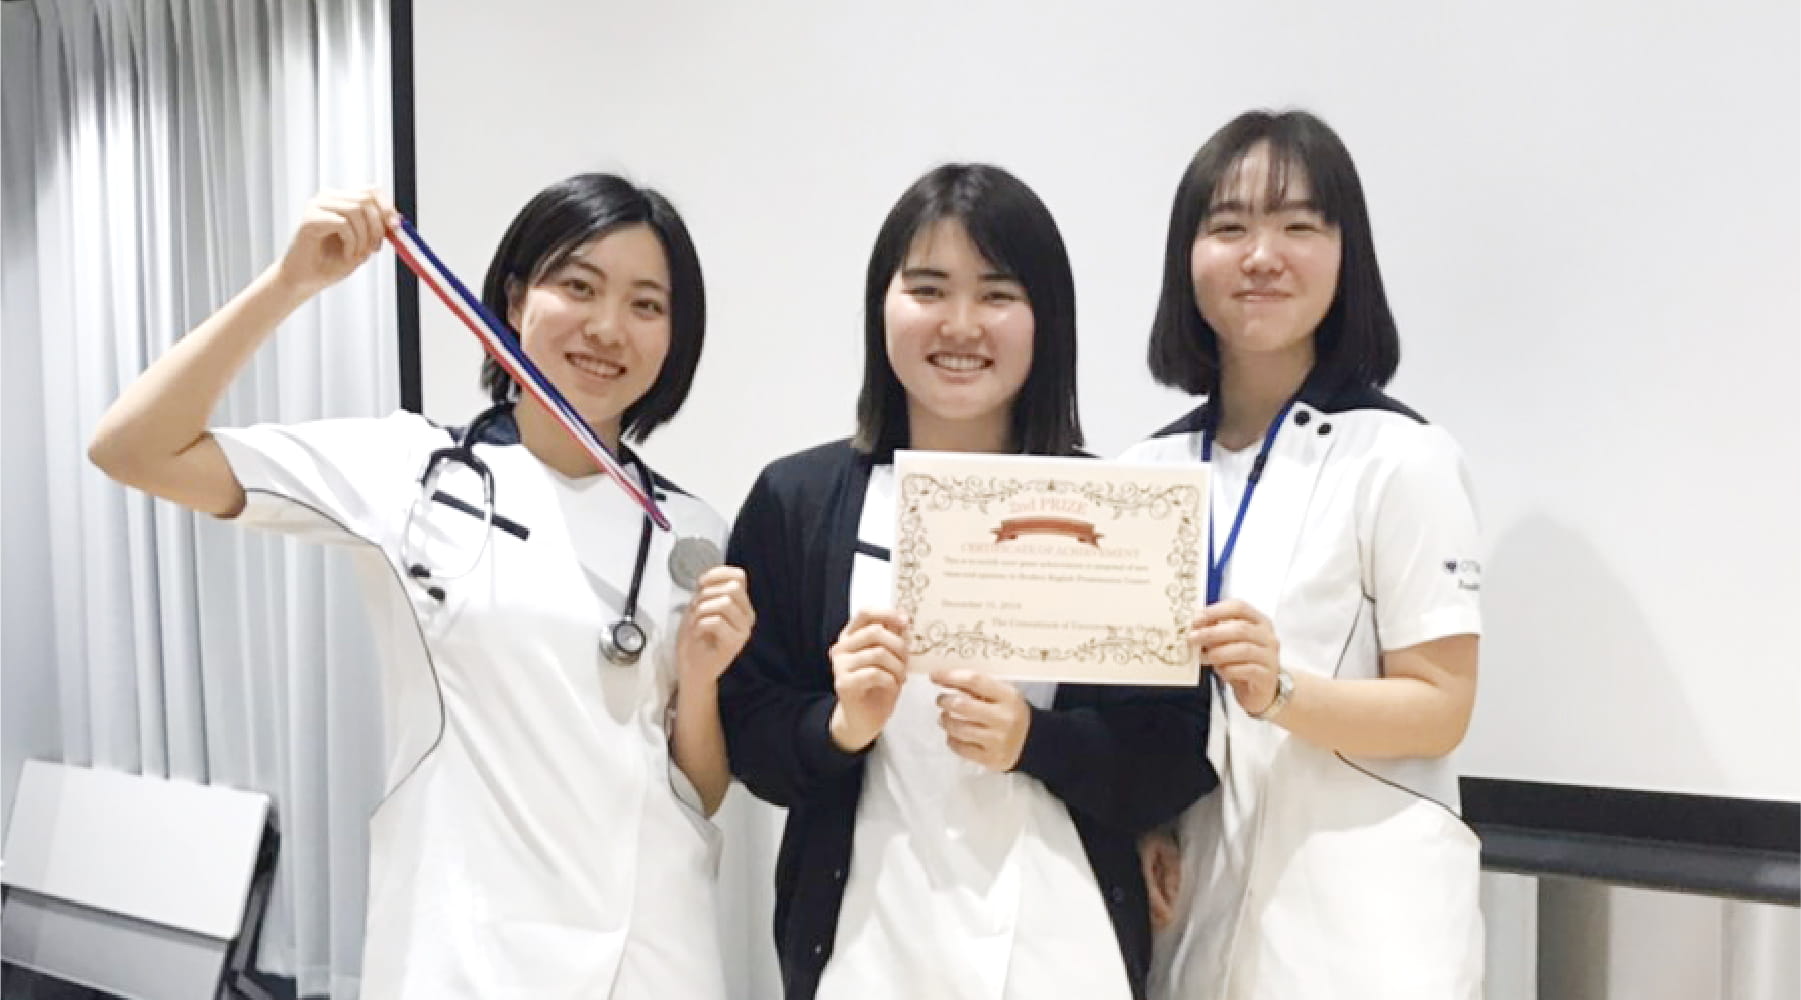 大阪の医療への問題提議を、英語で発表。 英語プレゼンコンテストで第2位に入賞。